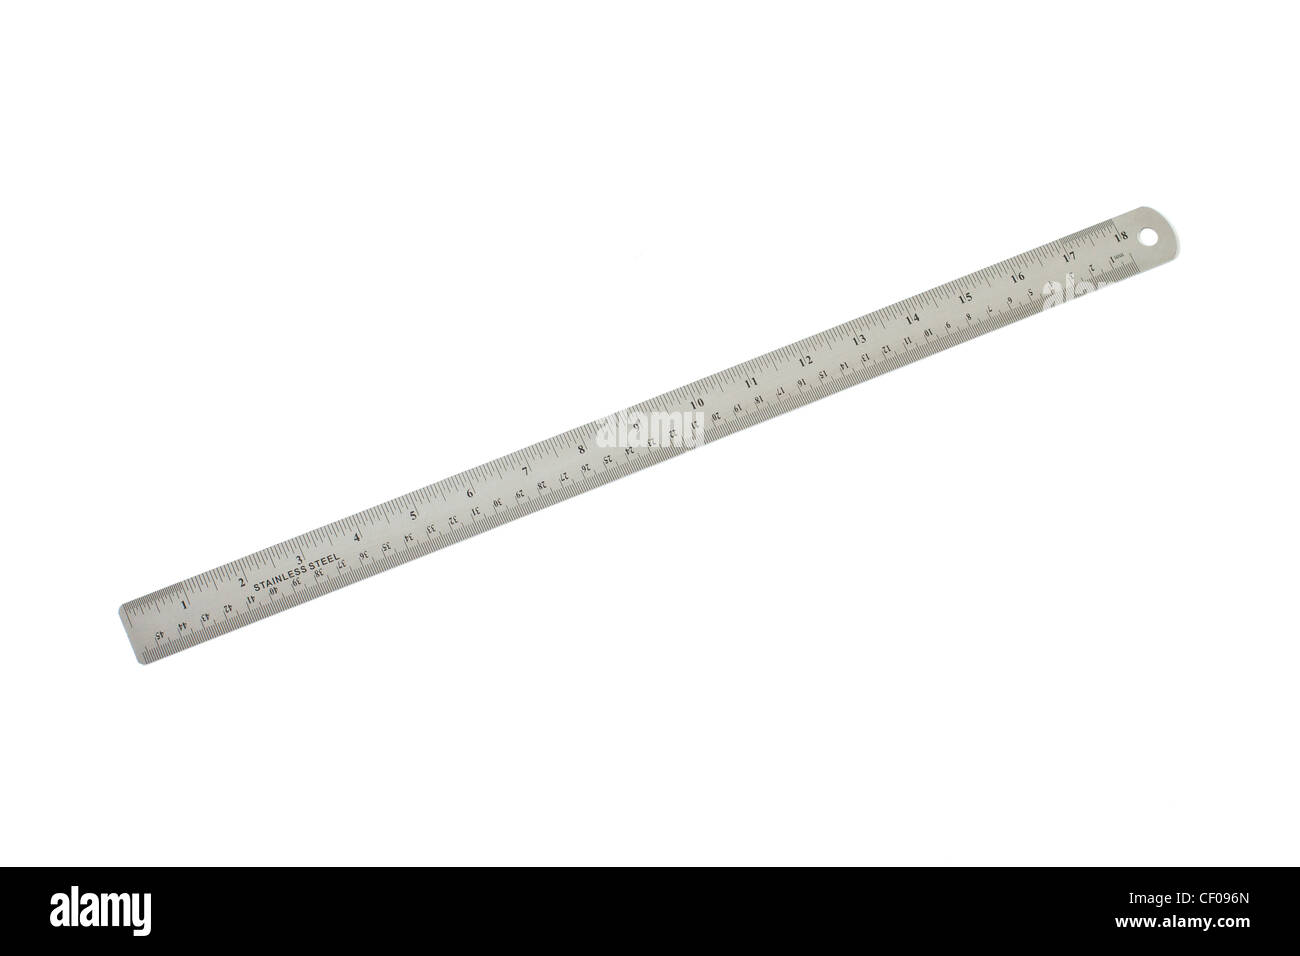 Stainless Steel 16 Inch Straight Ruler Measuring Kit Metric 40cm SODIAL R 